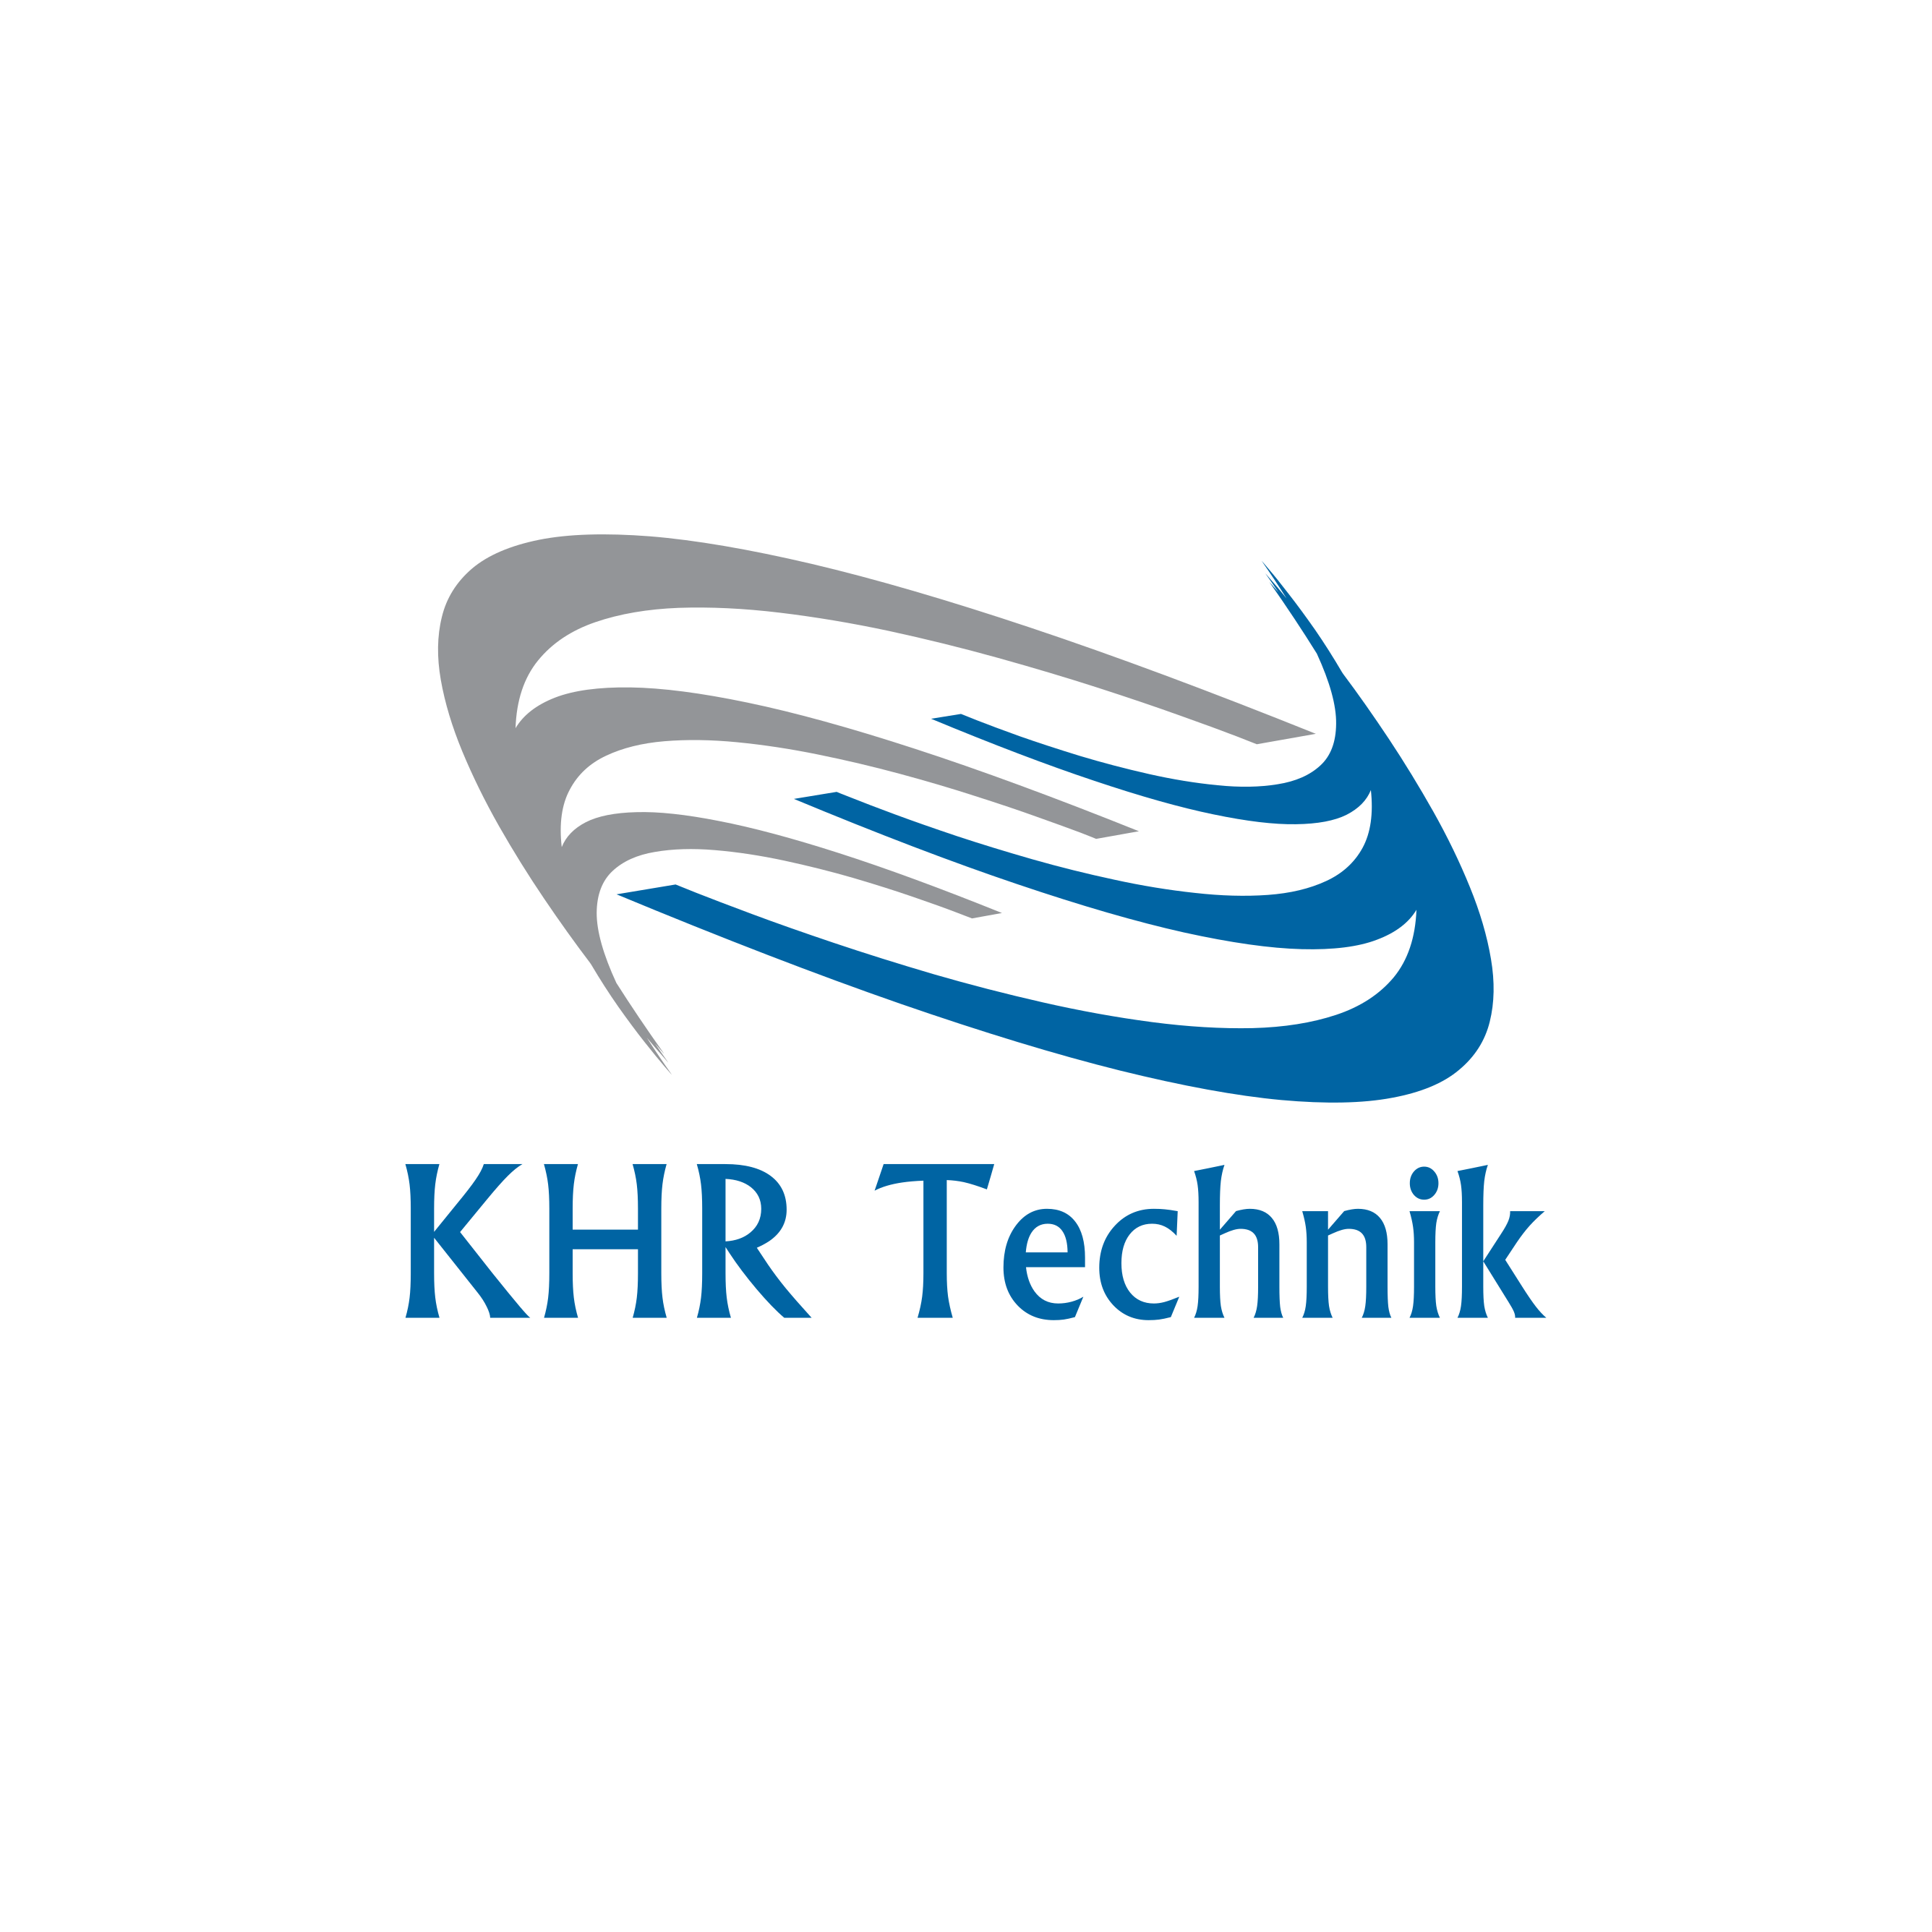 KHR Technik Logo